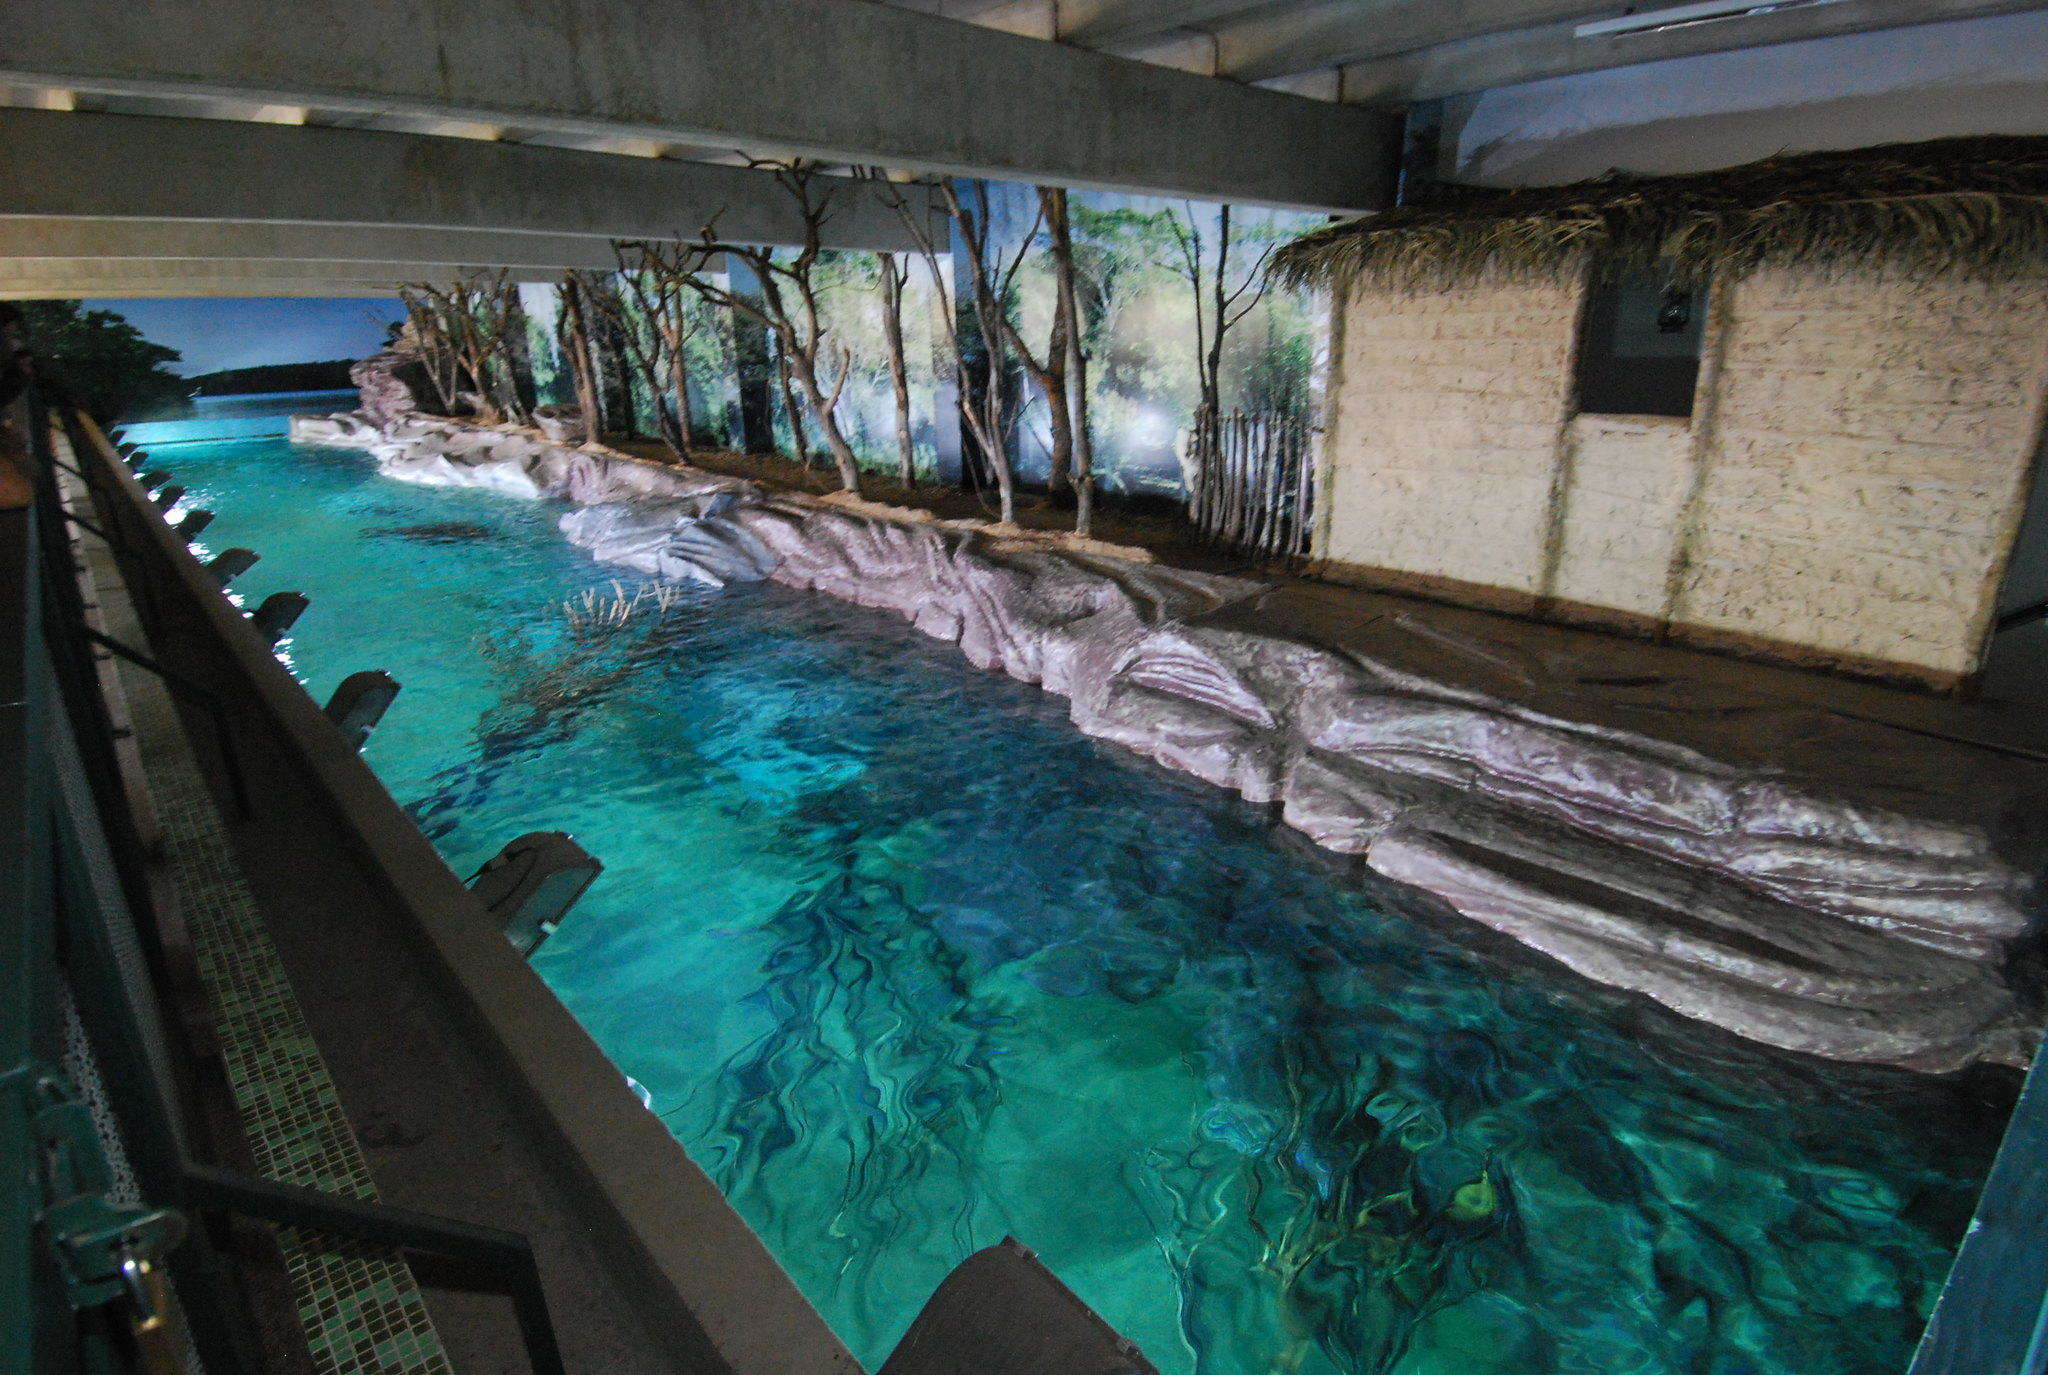 Localizado no Jardim Zoológico da capital, na região da Pampulha, além de atração turística, o aquário oferece estudos sobre biologia, criação e manutenção de peixes em cativeiro.